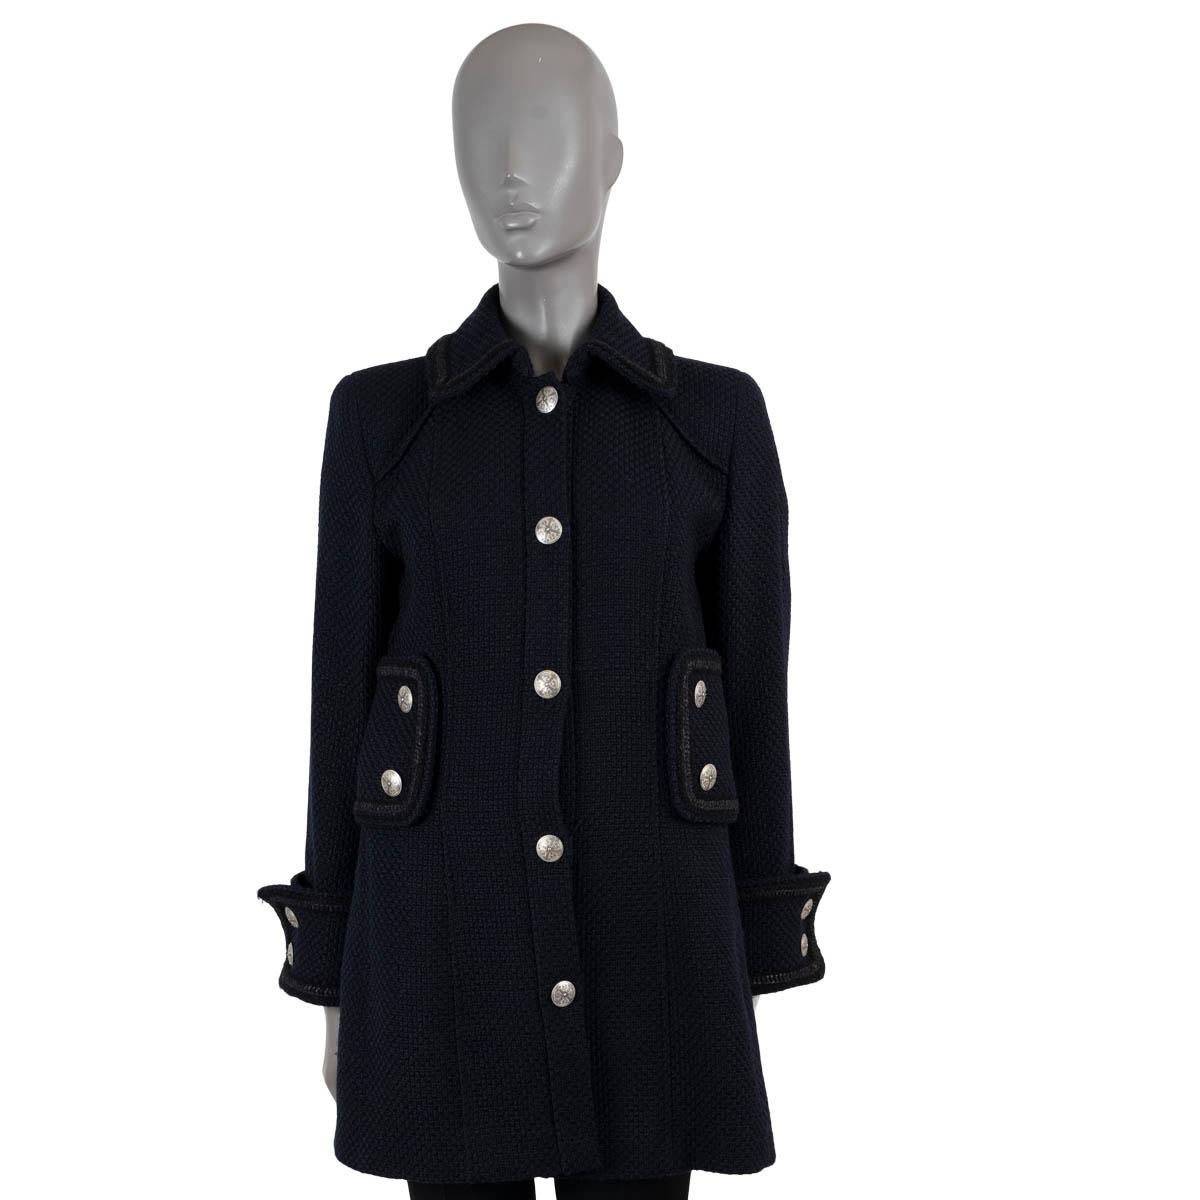 Manteau manteau CHANEL bleu marine 2009 09A TWEED PEACOAT 40 M en vente